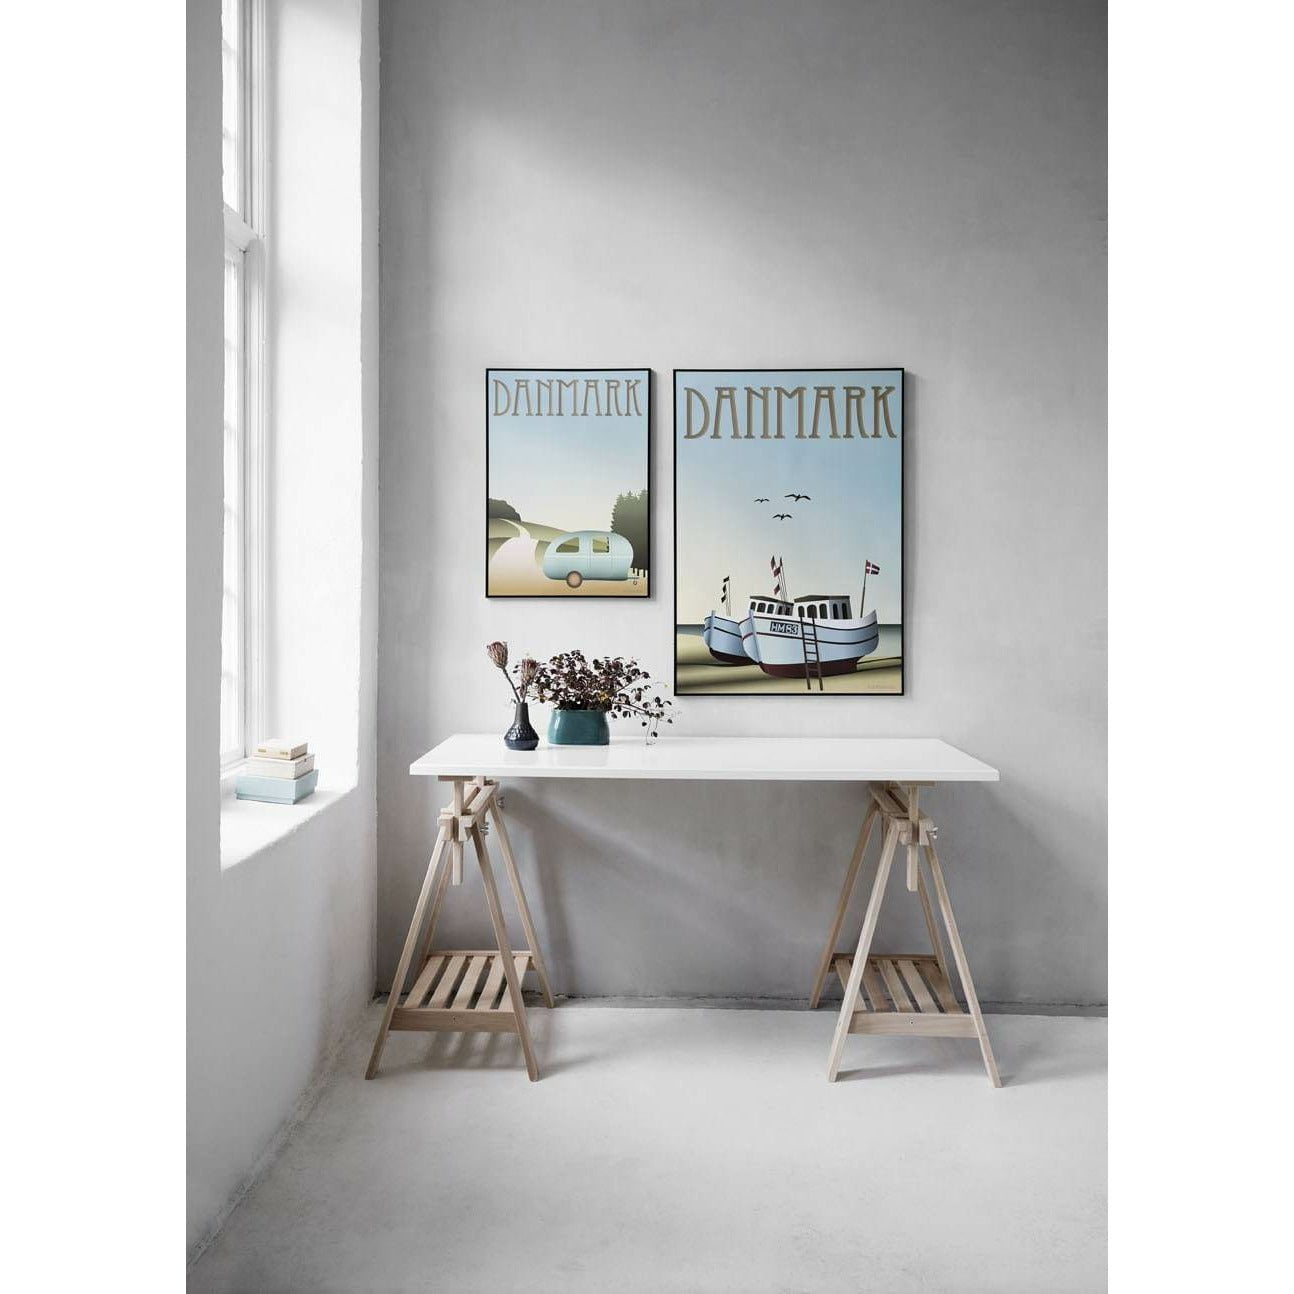 Vissevasse Dänemark Fischerboote Poster, 70 X100 Cm